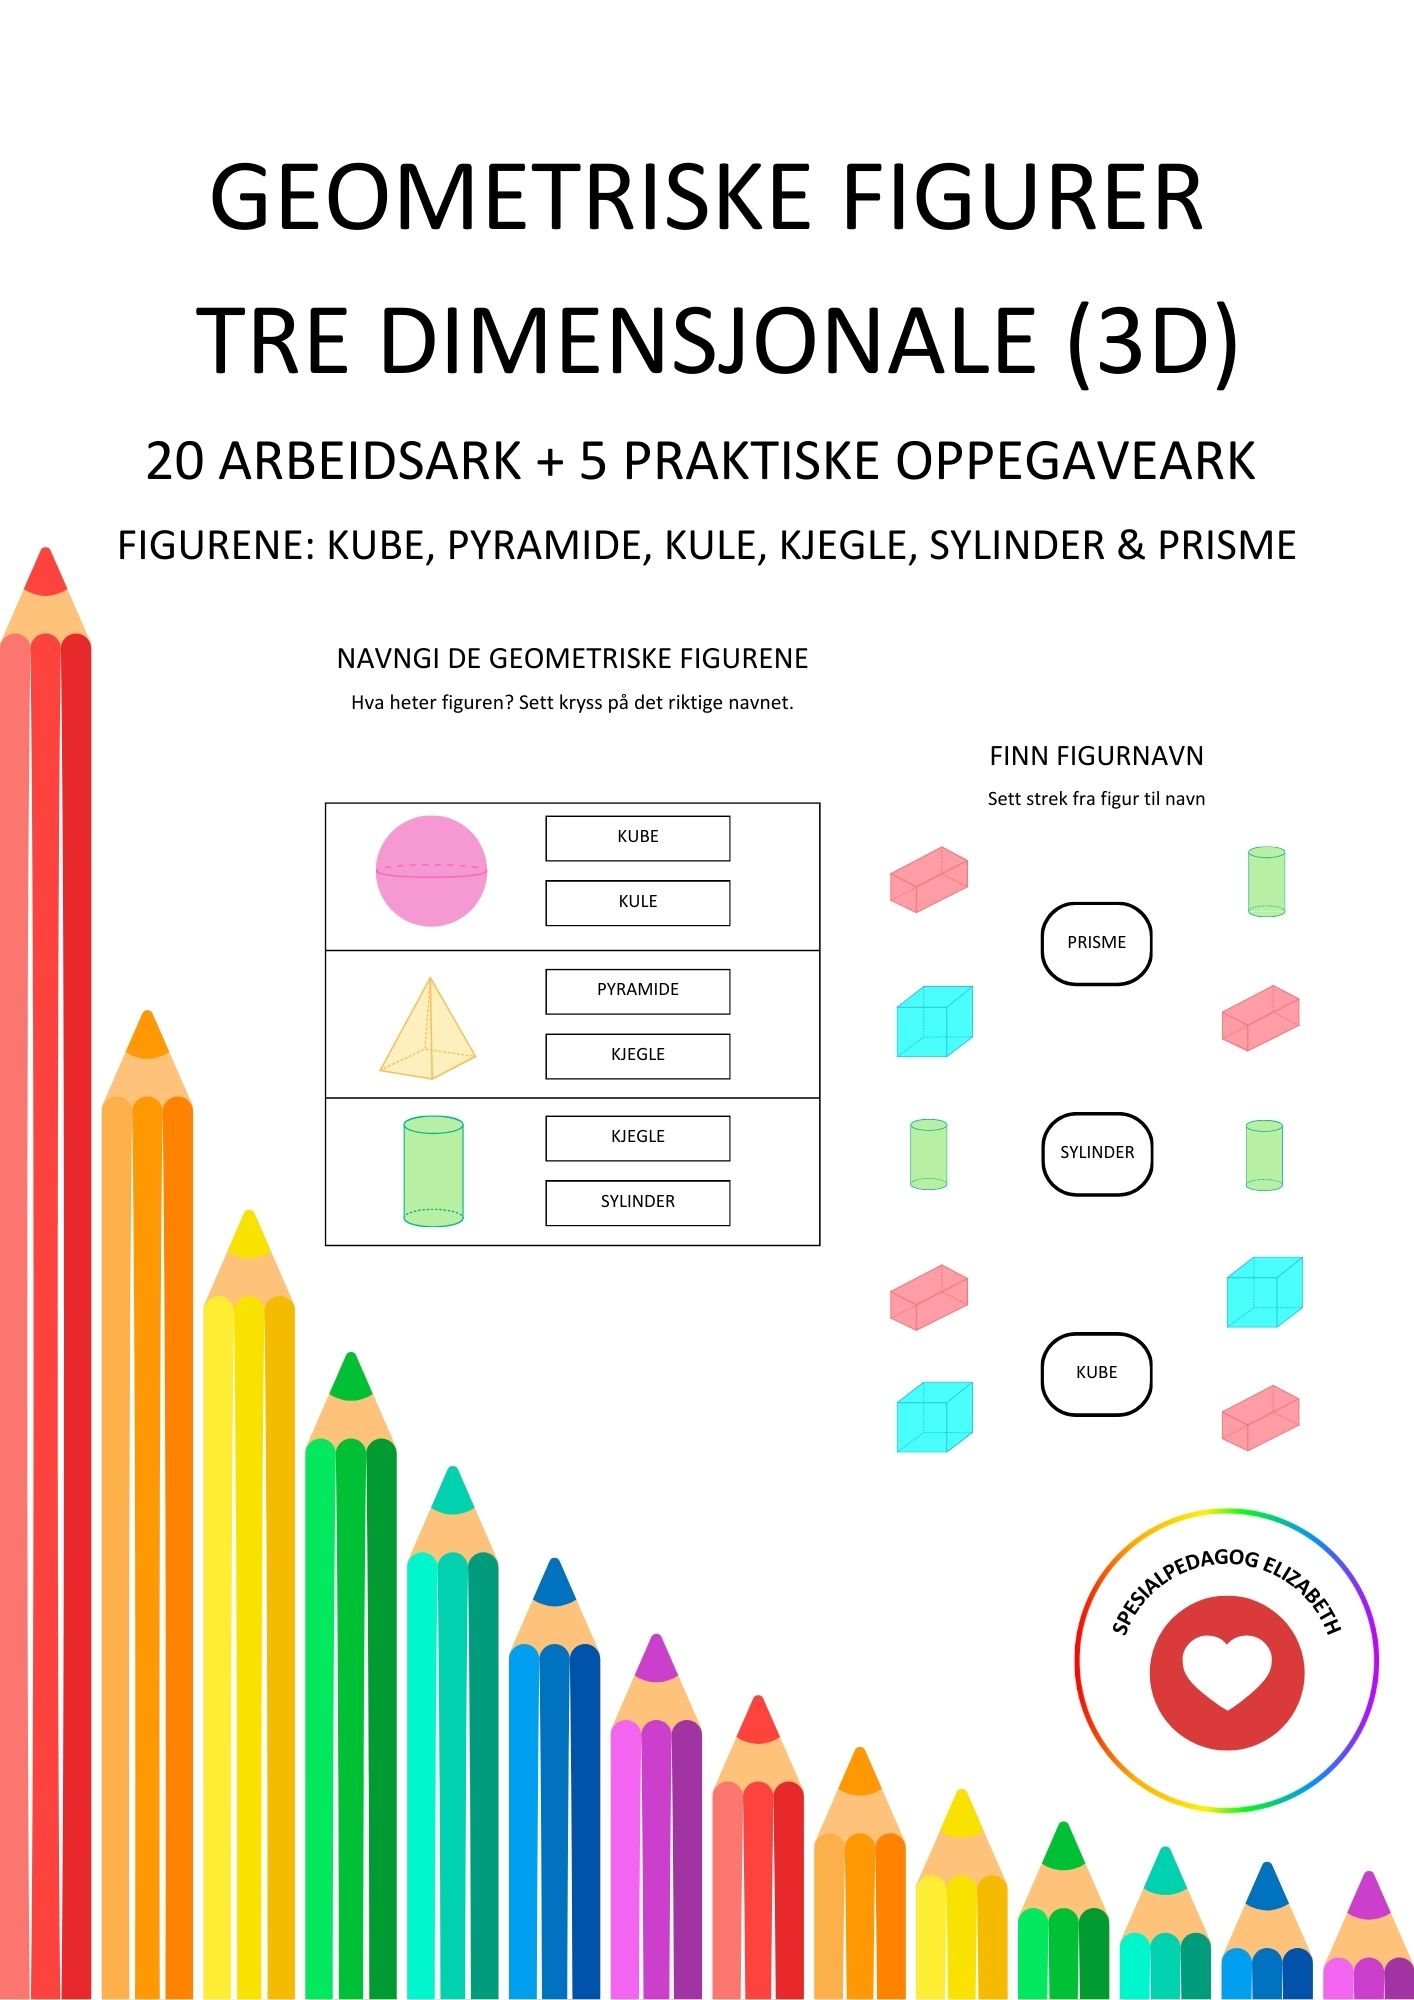 3 dimensjonale geometriske figurer (3D) – kule, kube, kjegle, sylinder og prisme